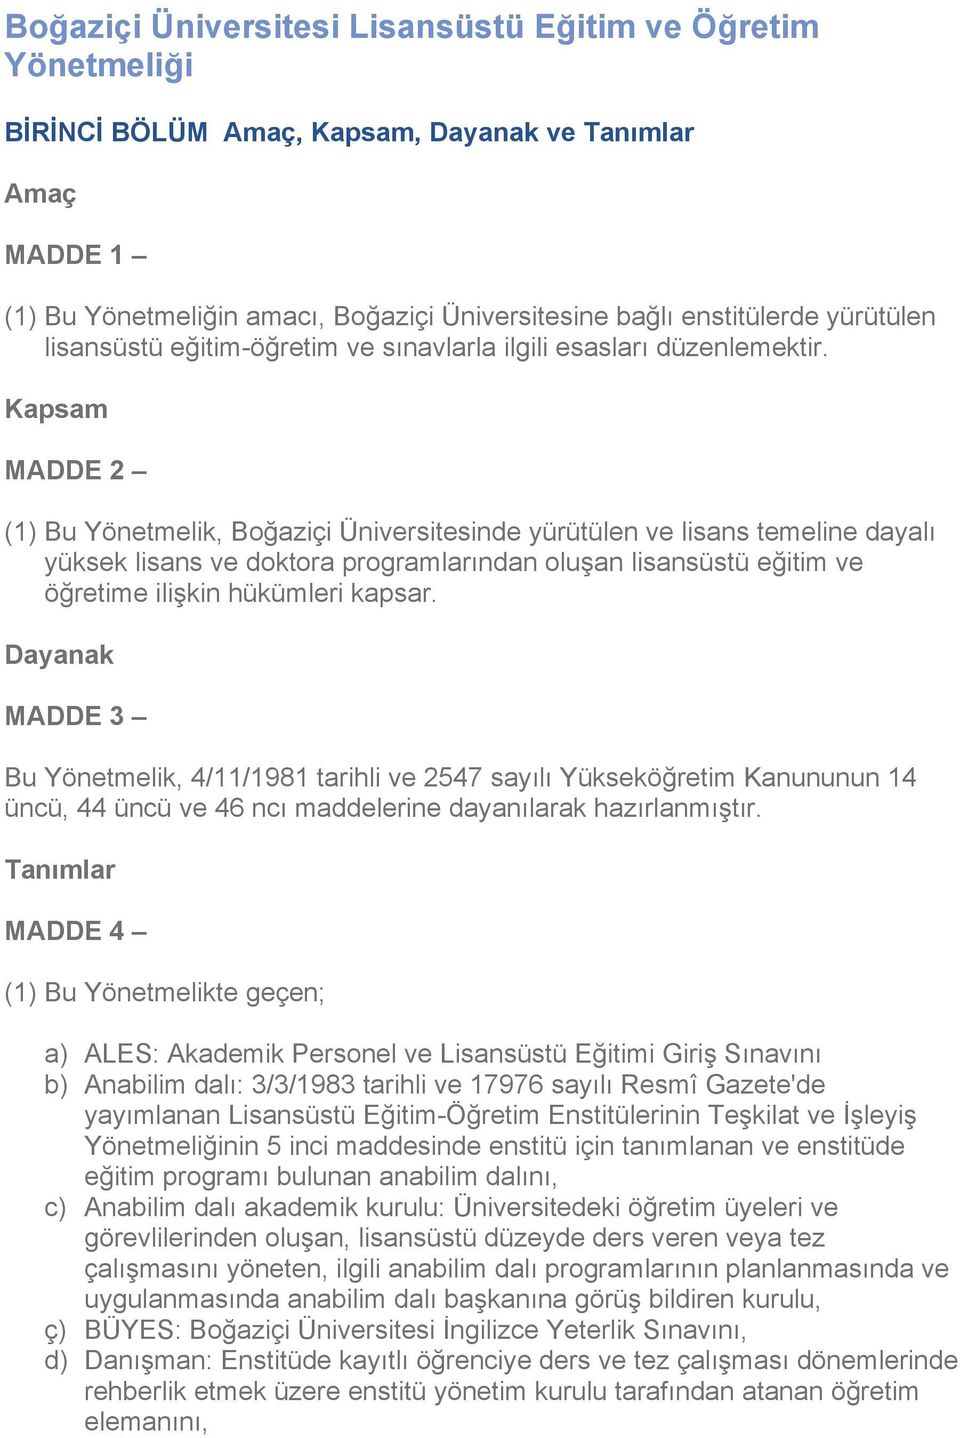 Kapsam MADDE 2 (1) Bu Yönetmelik, Boğaziçi Üniversitesinde yürütülen ve lisans temeline dayalı yüksek lisans ve doktora programlarından oluşan lisansüstü eğitim ve öğretime ilişkin hükümleri kapsar.